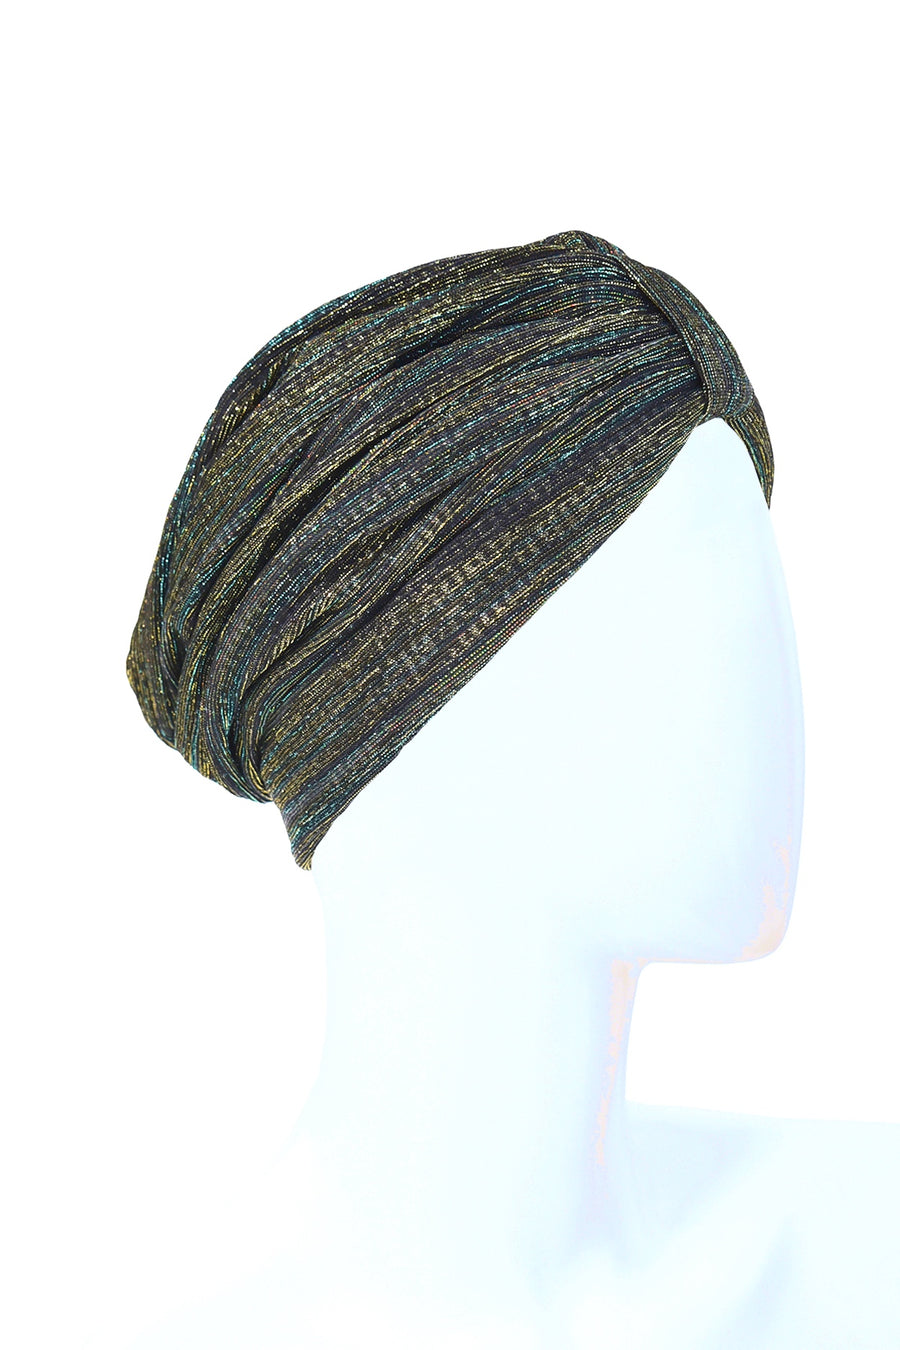 Striped multi colored turban - NEW !